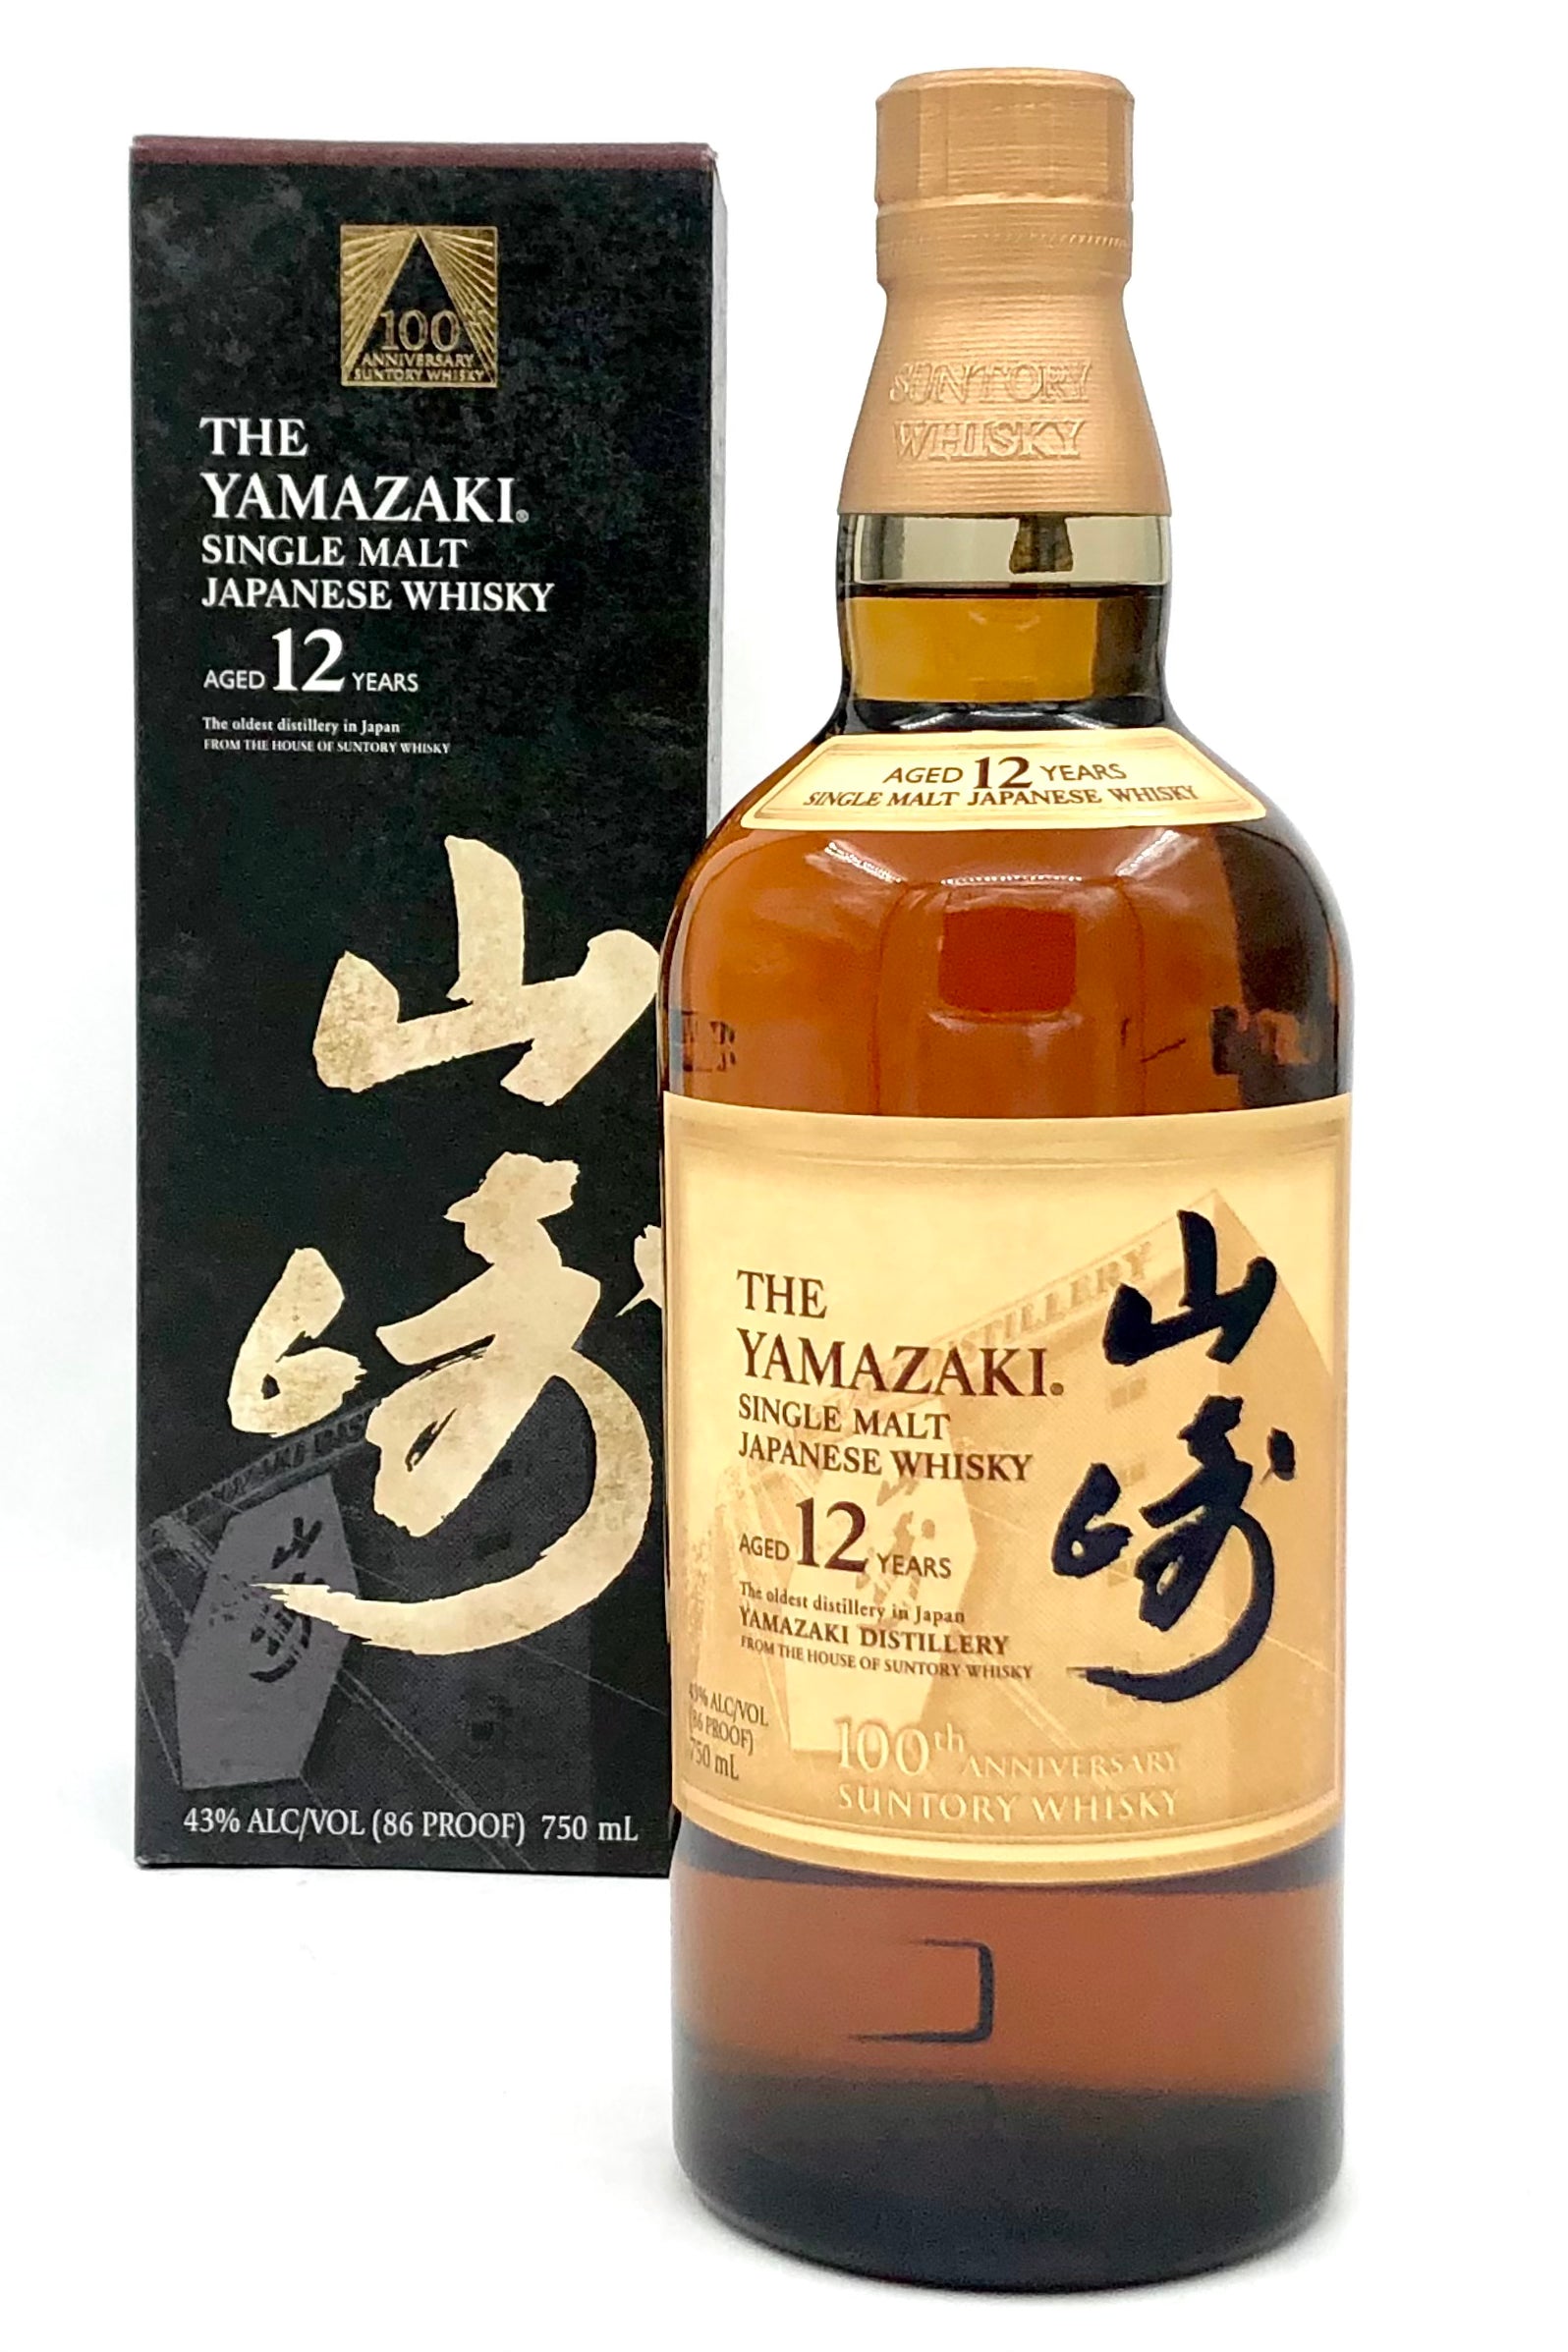 The Yamazaki Single Malt Whiskey 12 Year Old